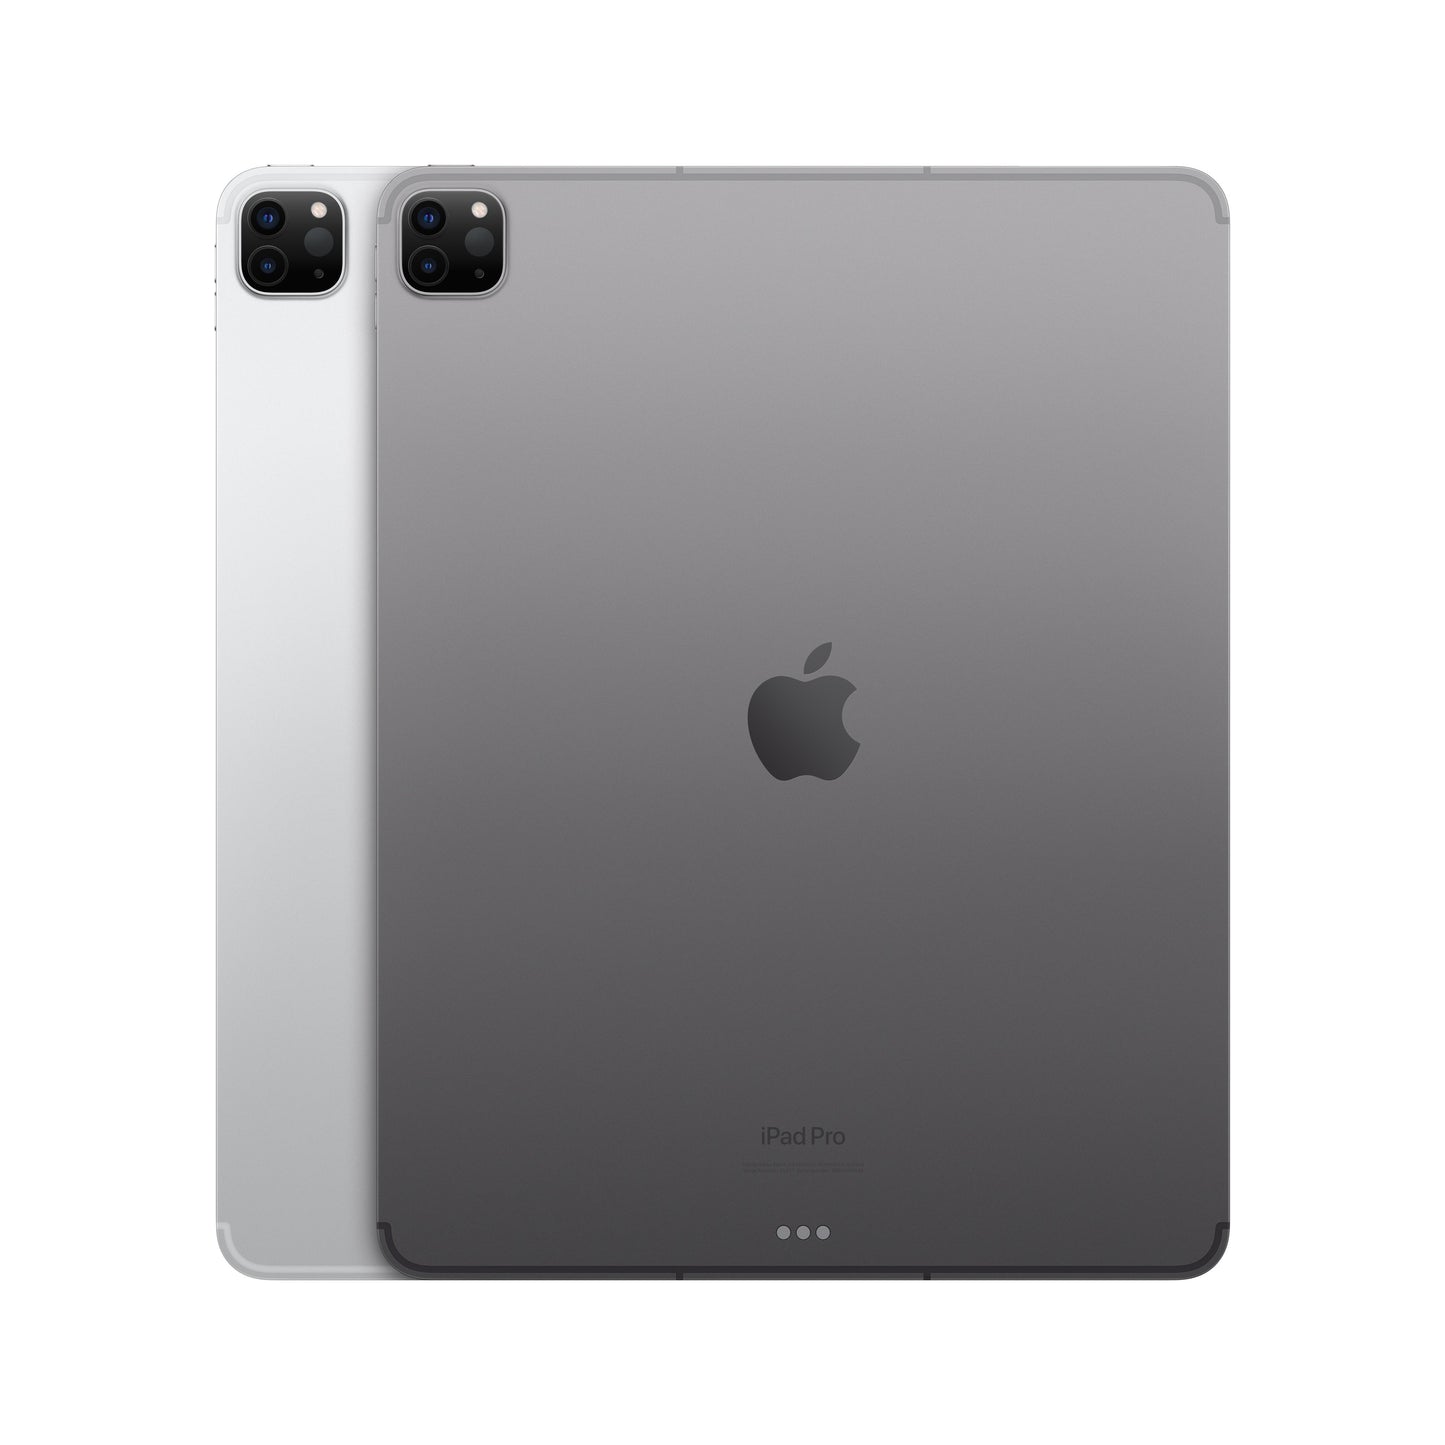 2022 12.9-inch iPad Pro Wi-Fi + Cellular 256GB - Space Grey (6th generation)